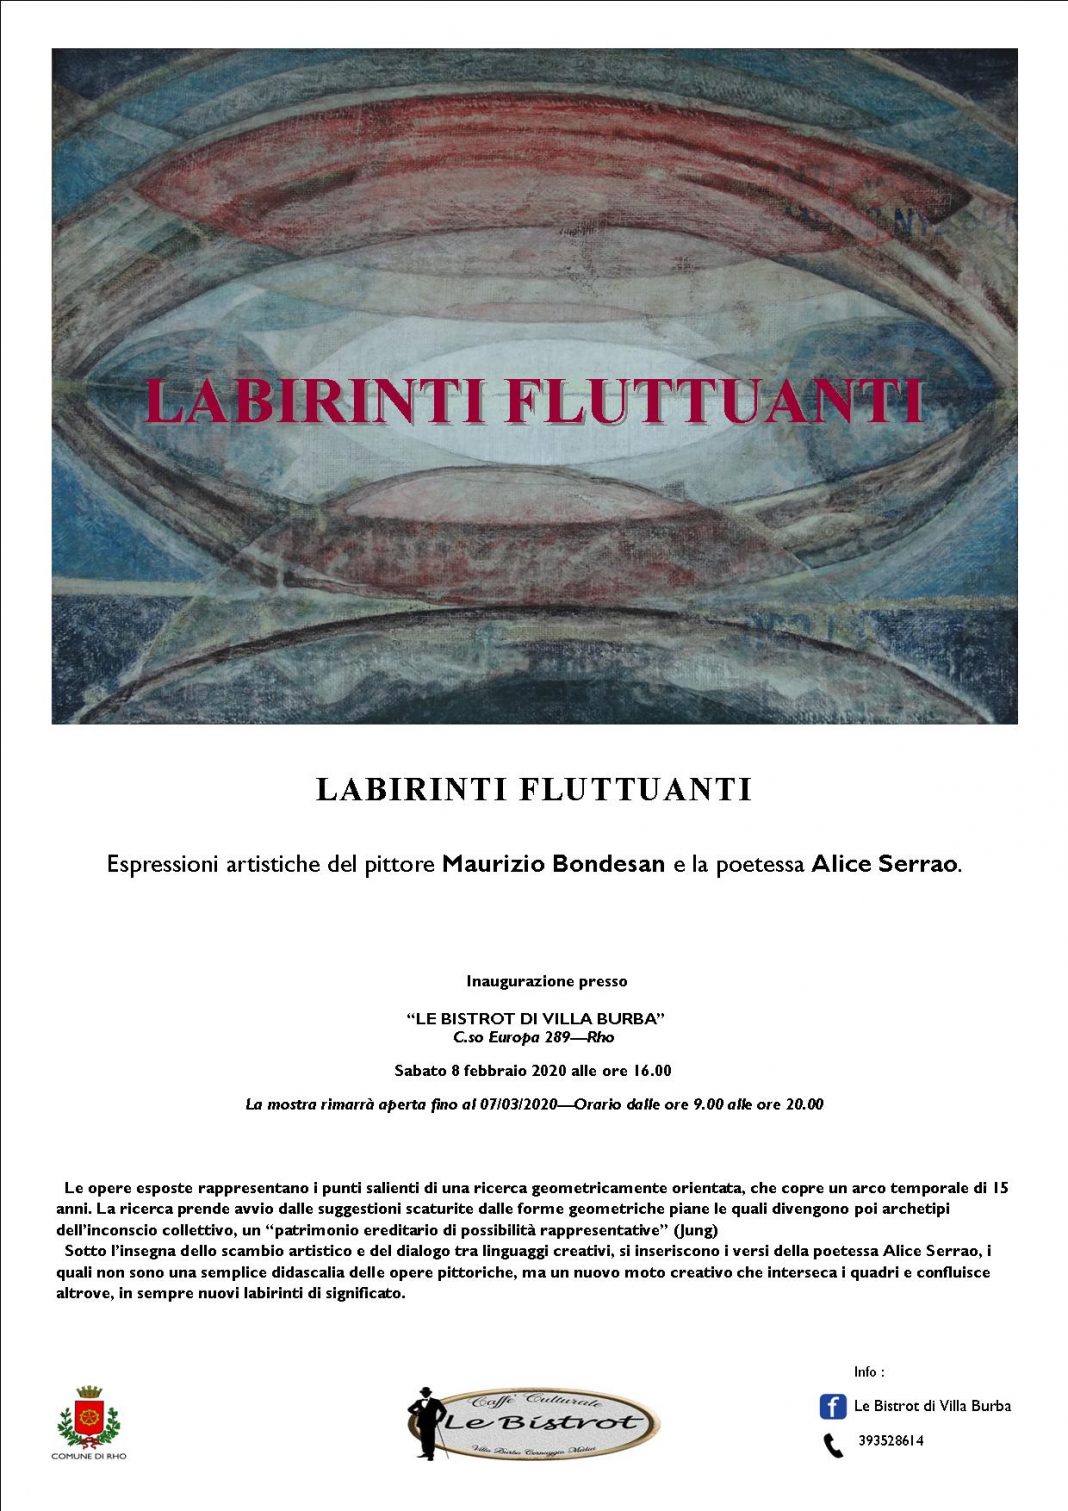 Labirinti fluttuantihttps://www.exibart.com/repository/media/formidable/11/locandina-formato-a4-con-foto-e-testo-1068x1511.jpg